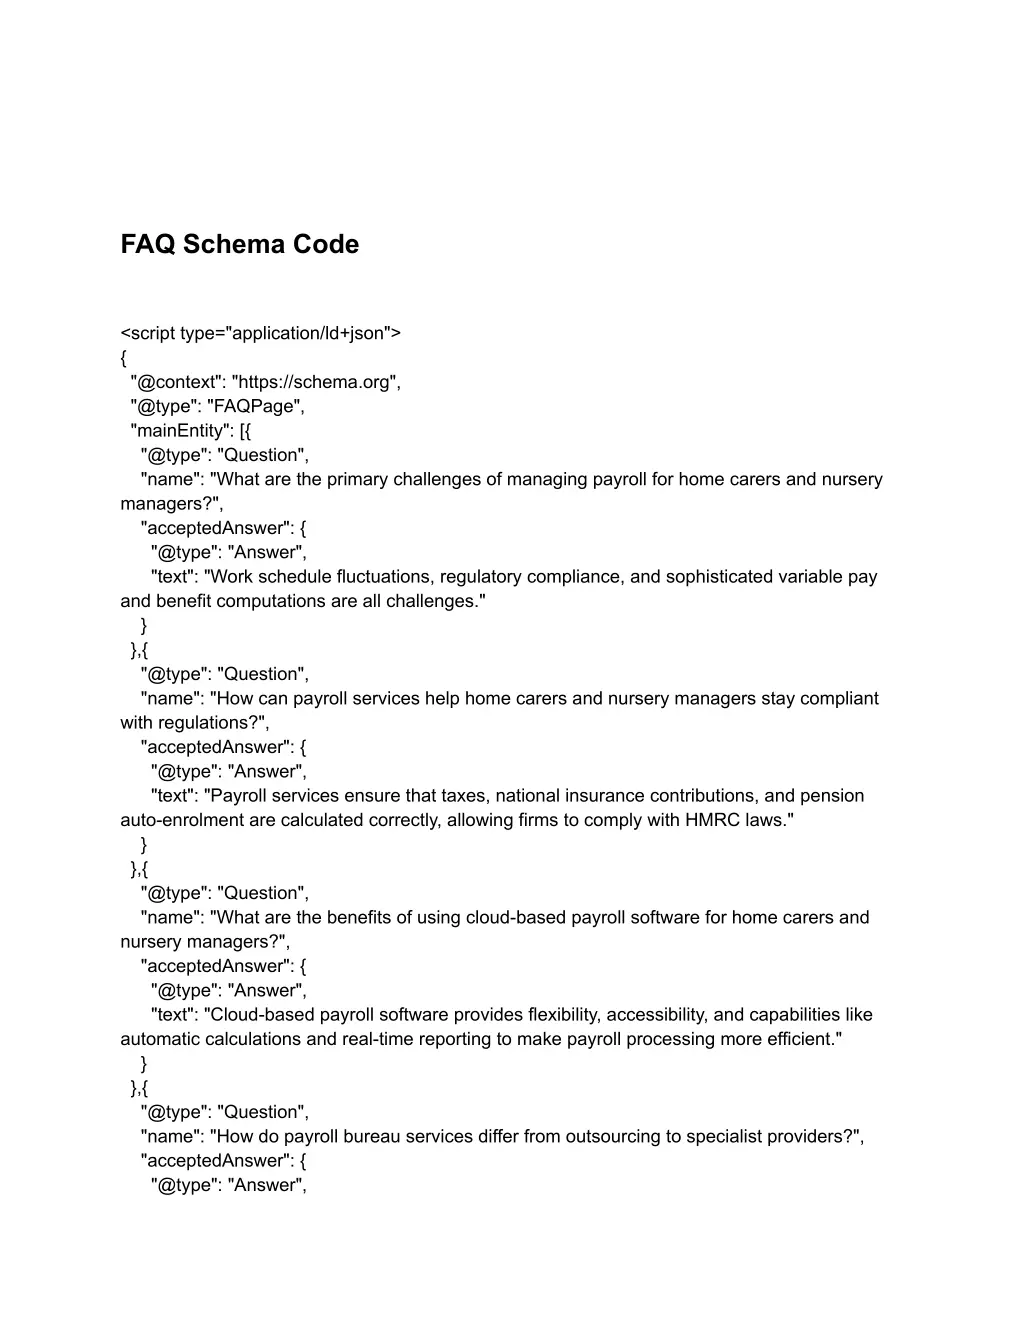 faq schema code